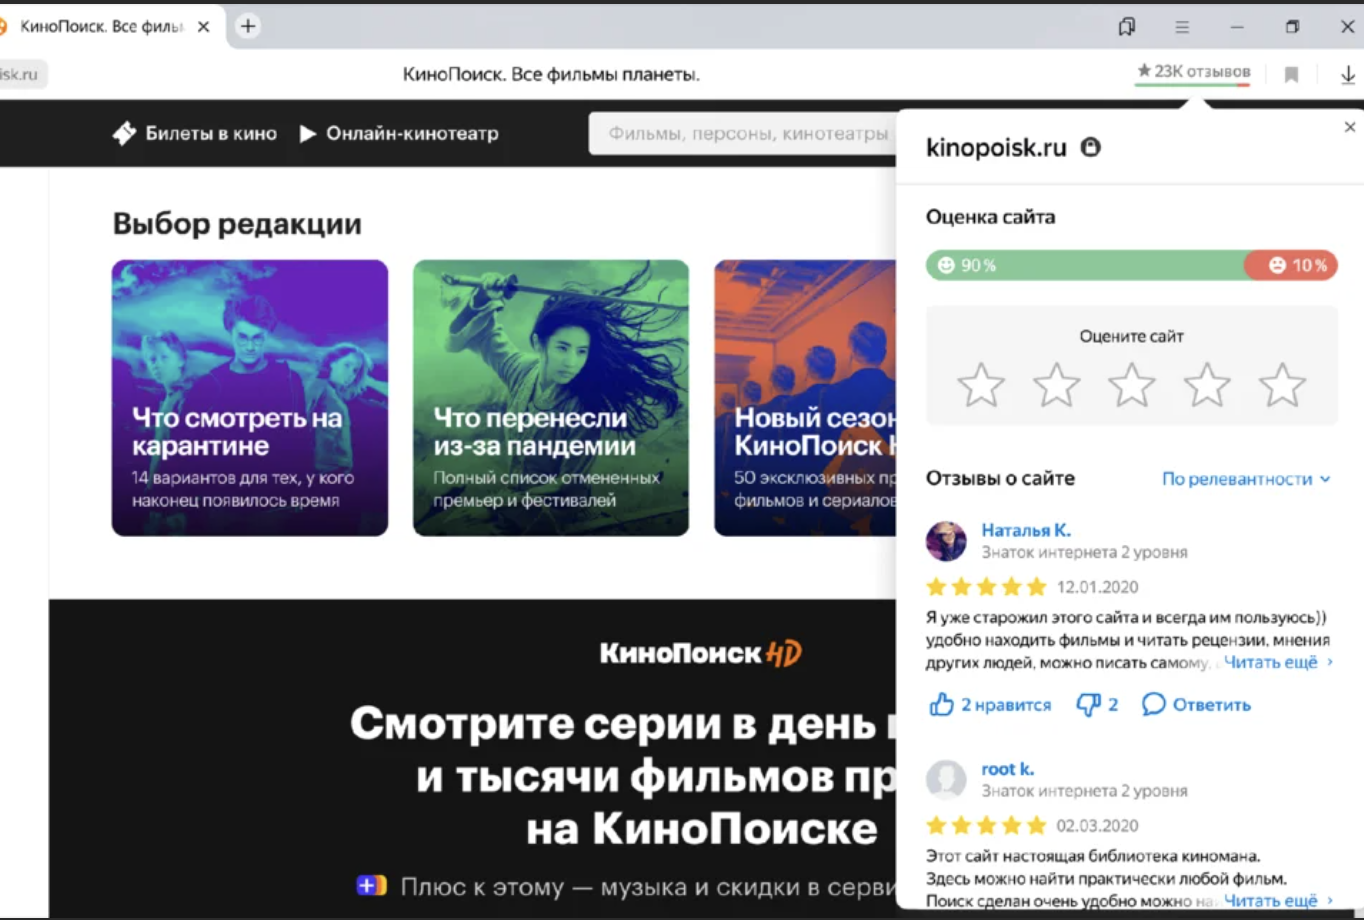 Получить сведения о пользователе Яндекса. Оценка сайтов отзывы